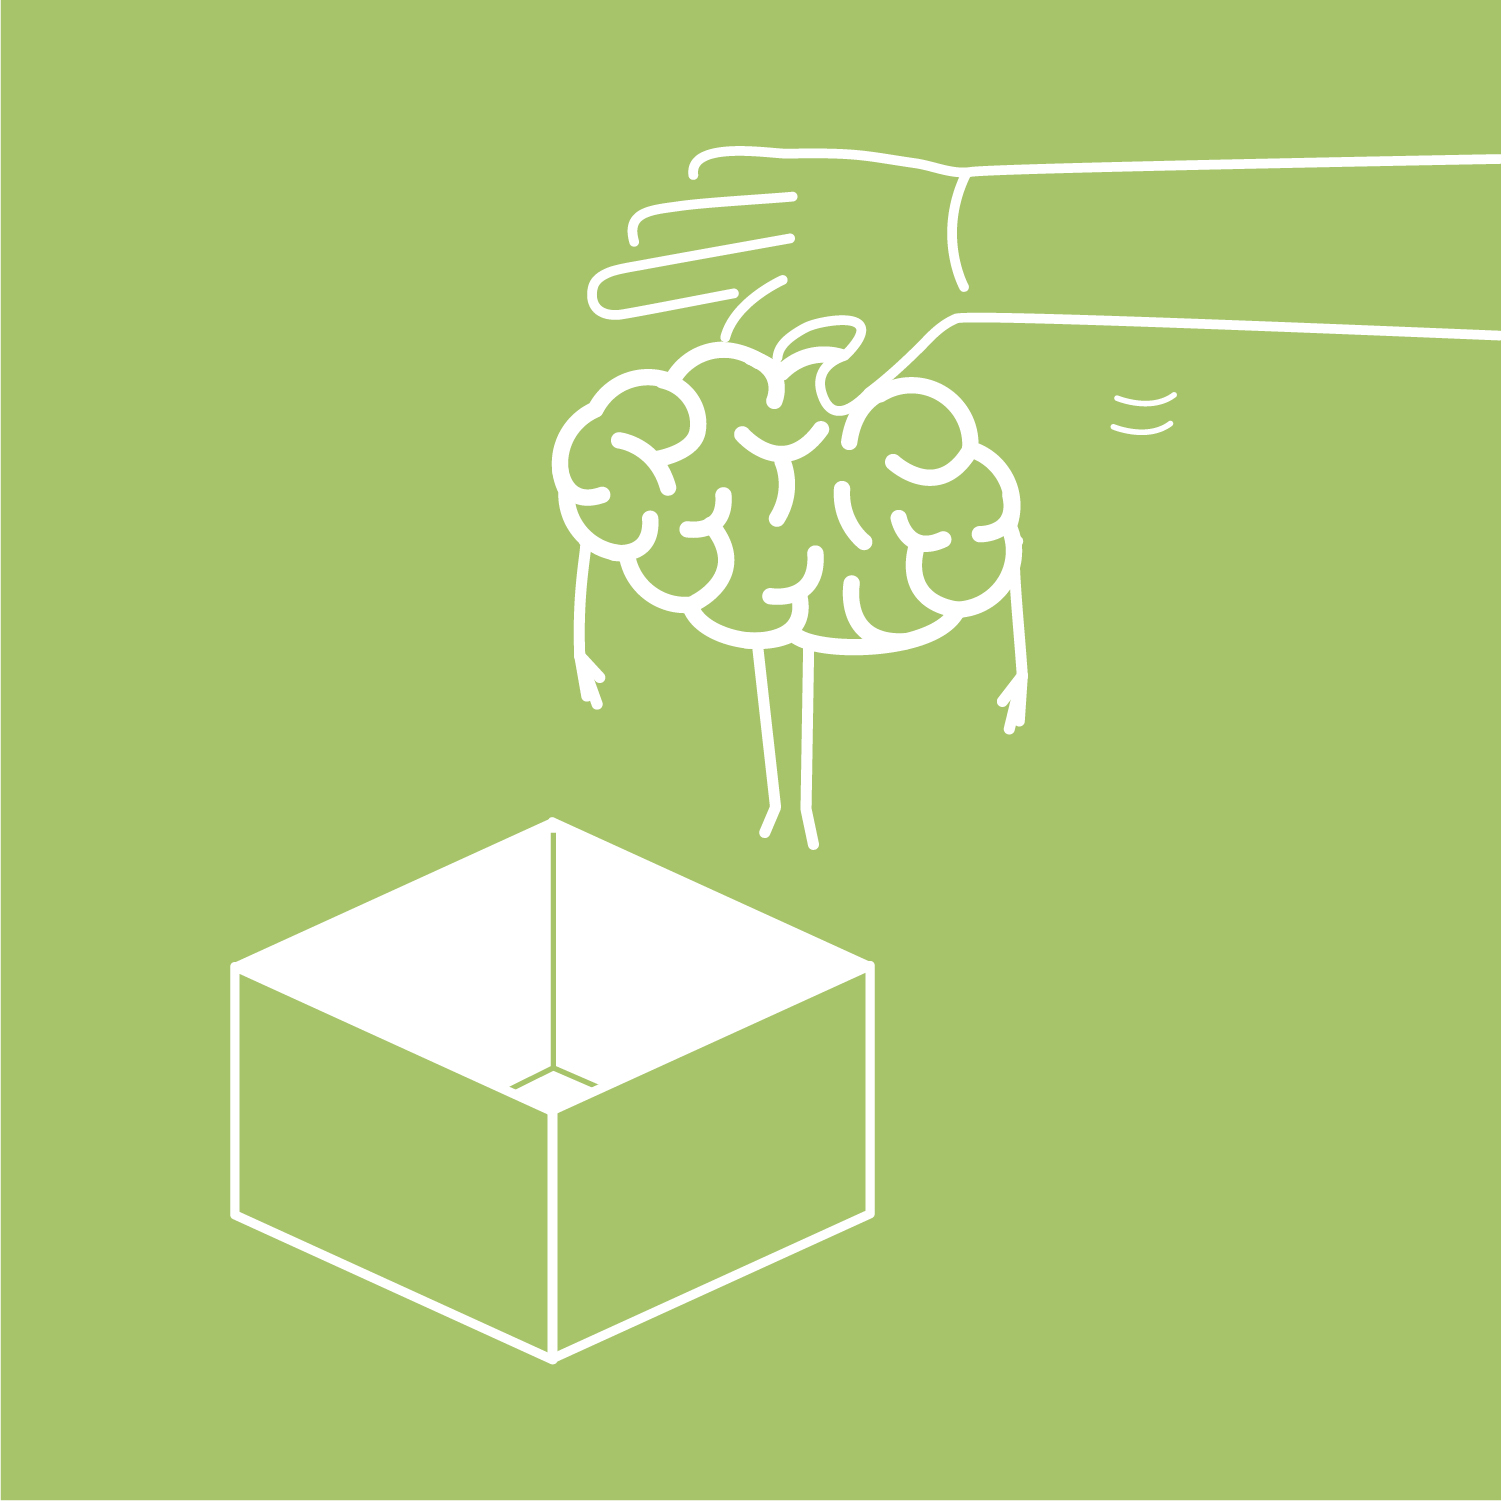 Grafik eines Gehirns, das von einer Hand aus einer Box gezogen wird